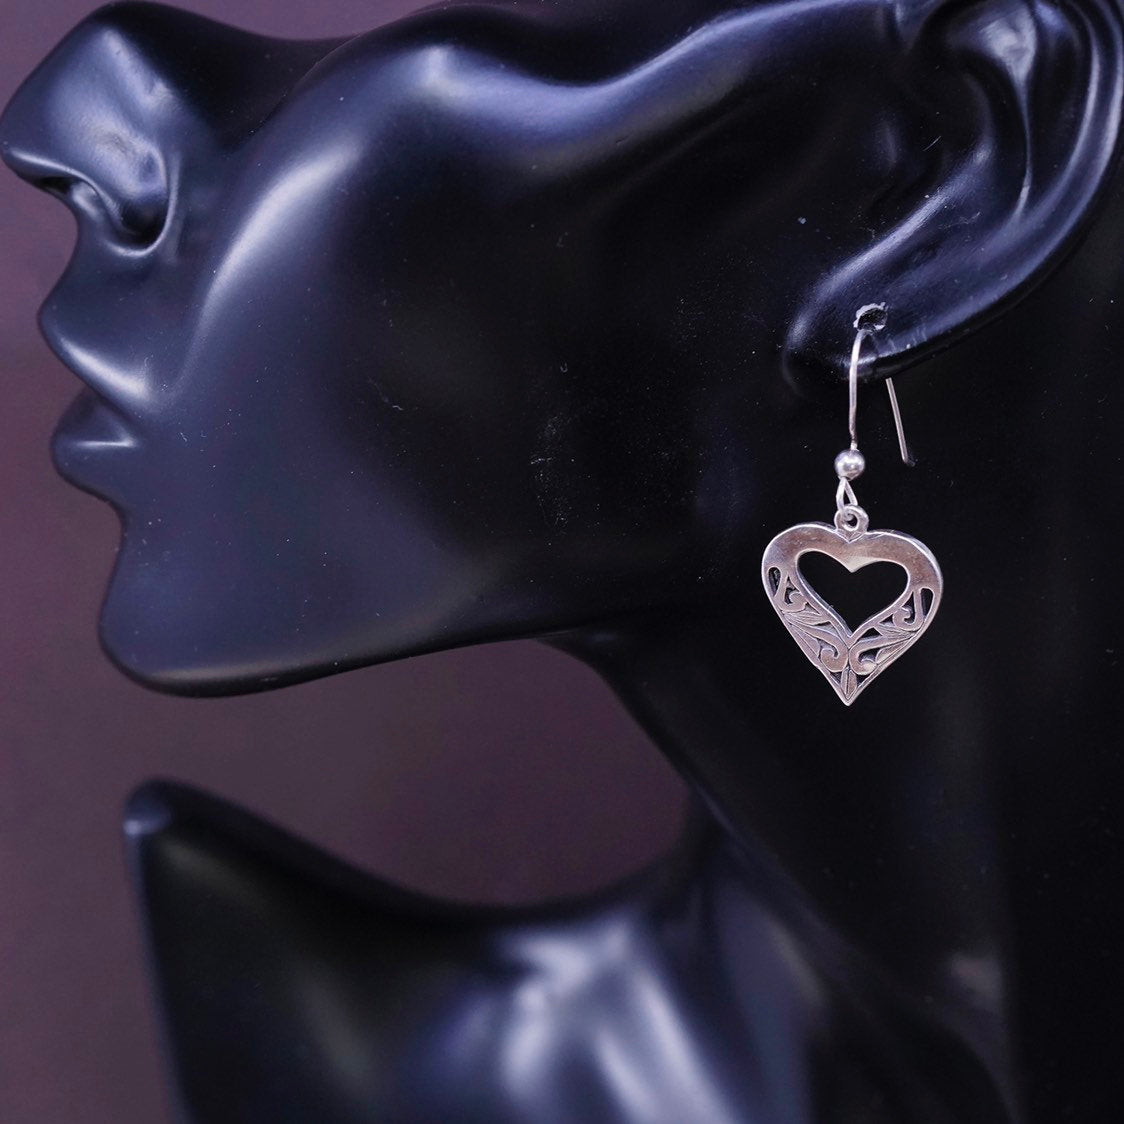 vtg Sterling silver handmade earrings, 925 filigree heart drops